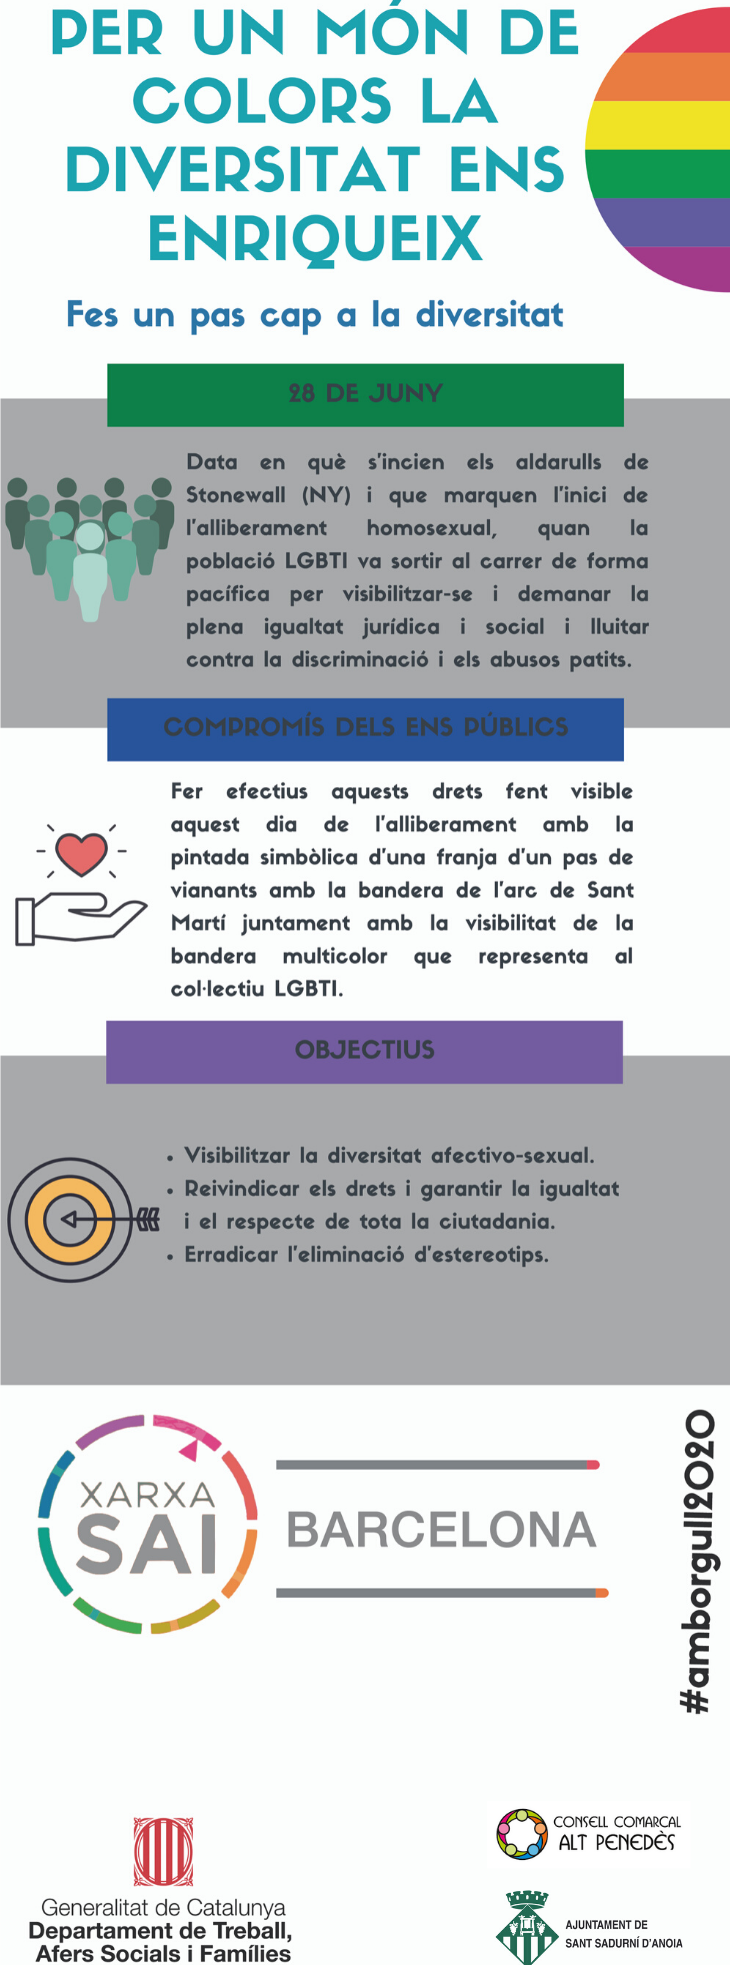 infografia xarxa SAI